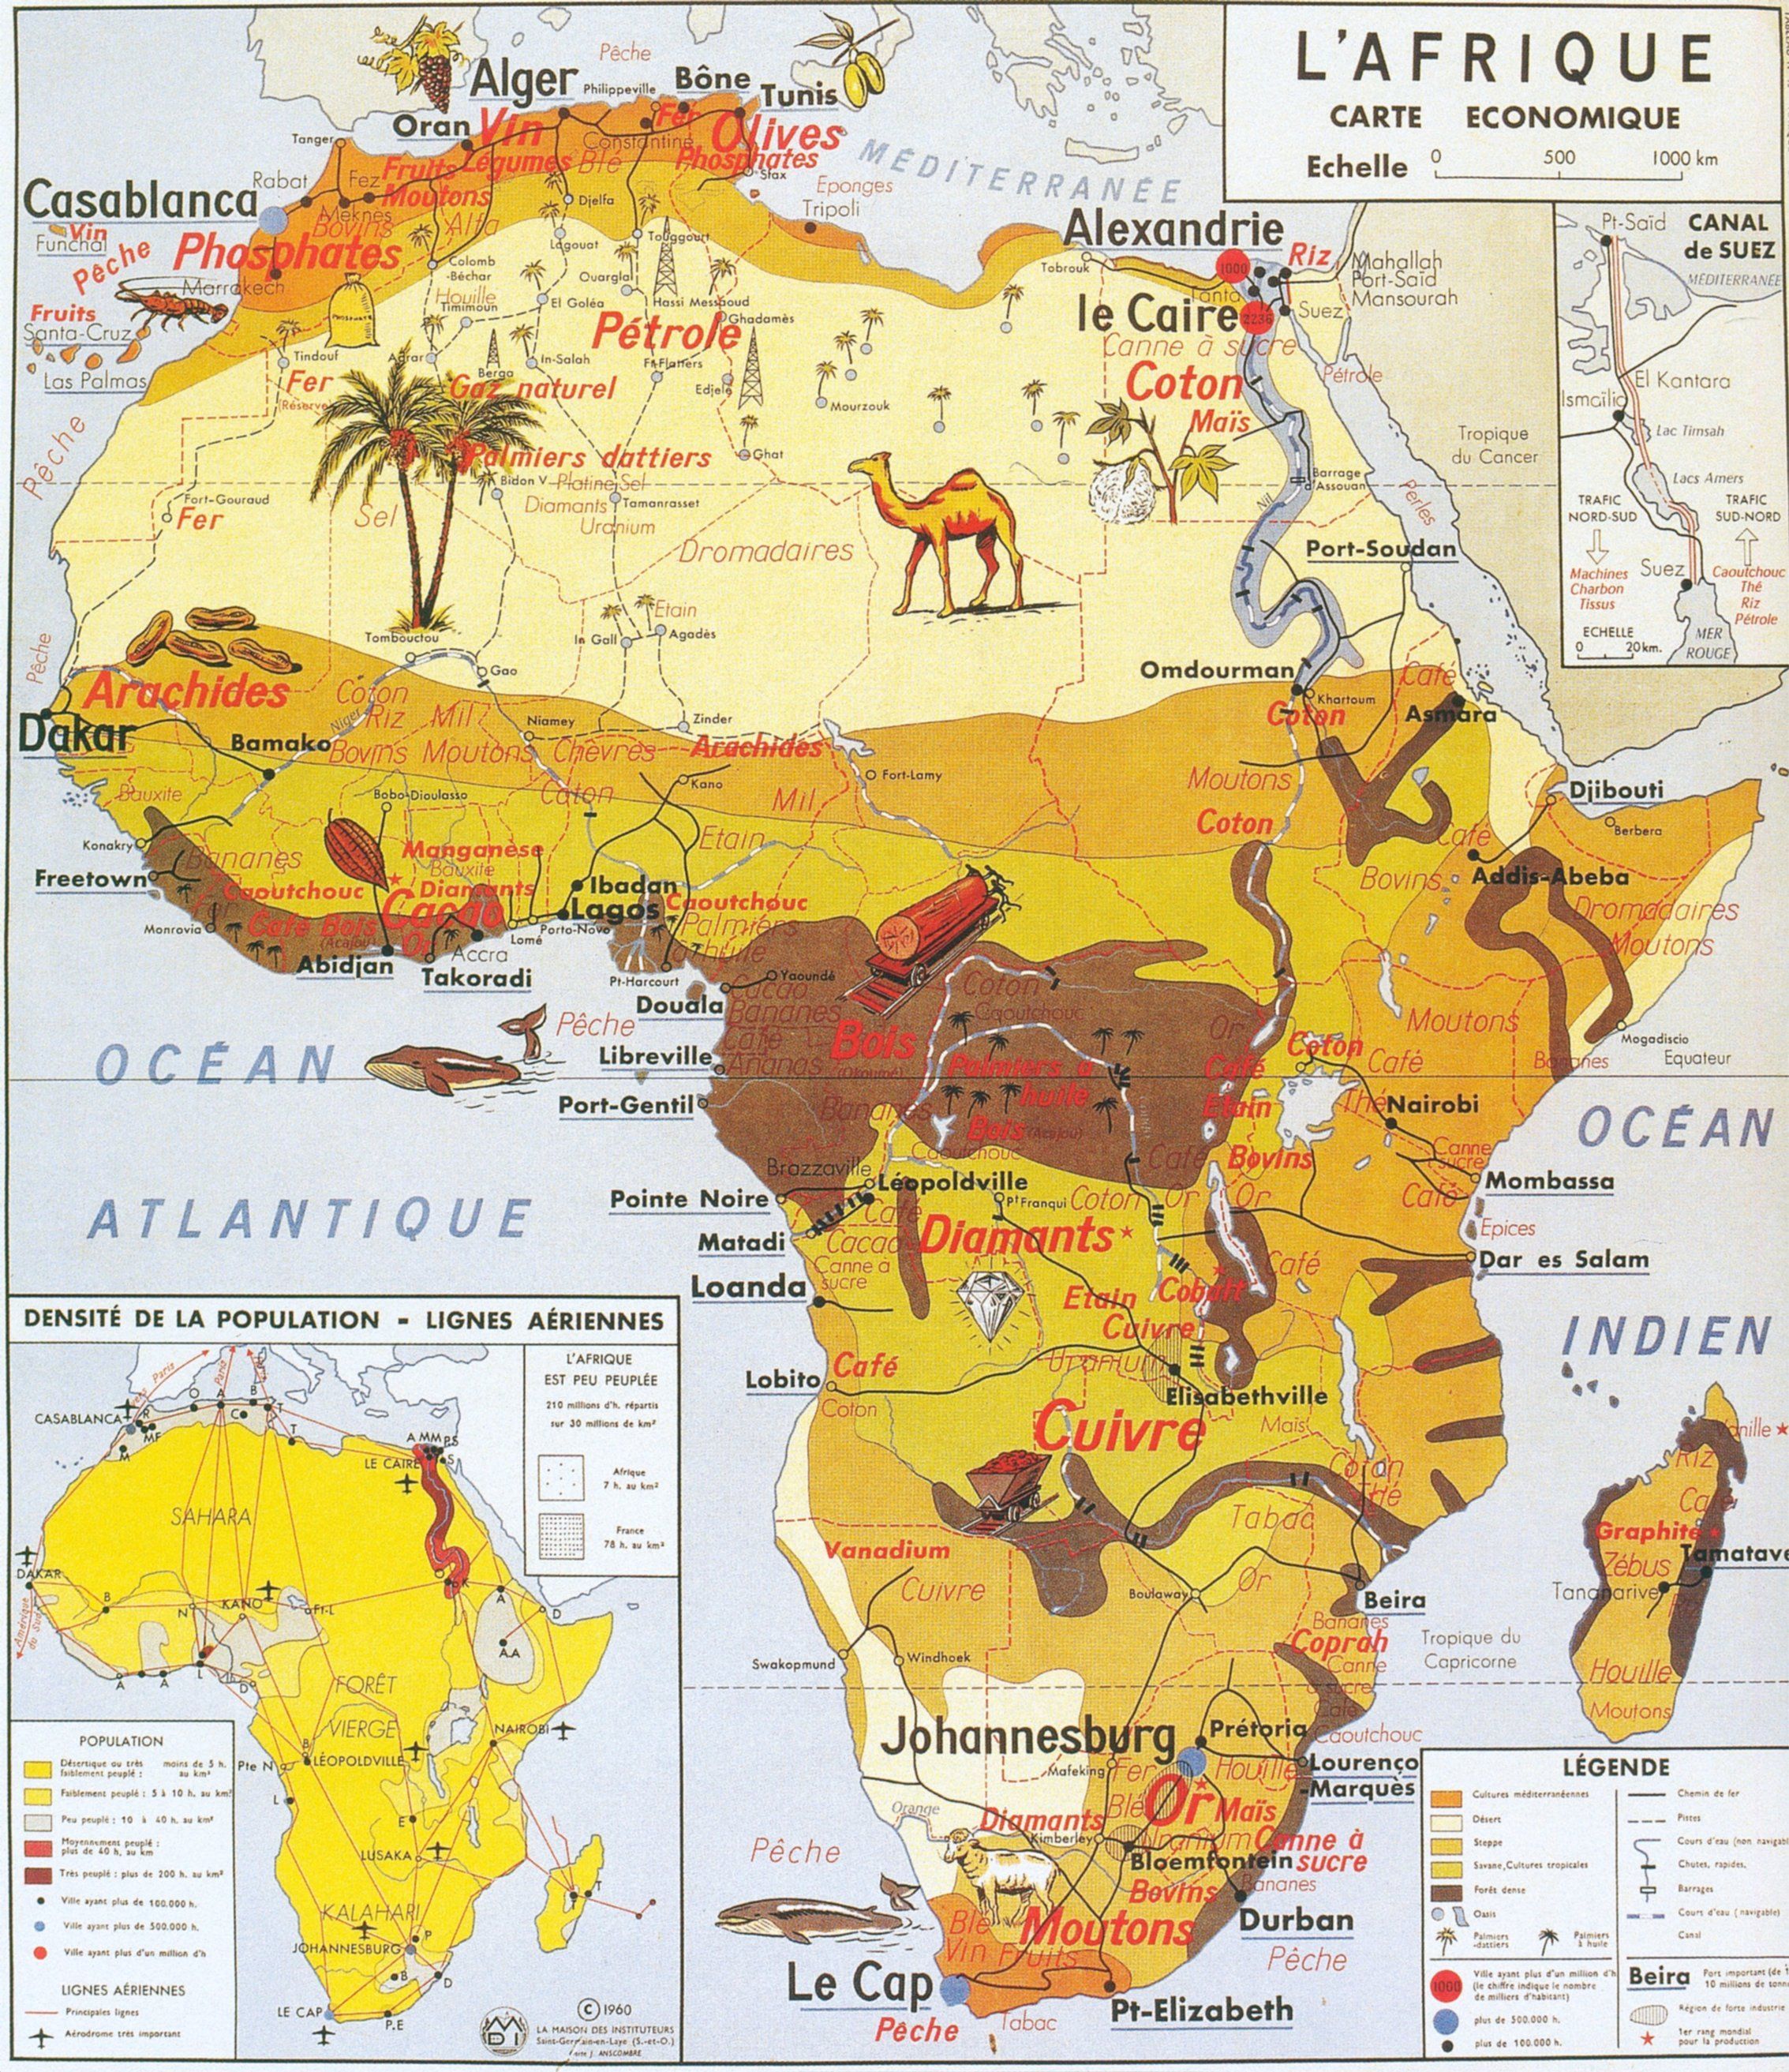 Carte économique de l'Afrique